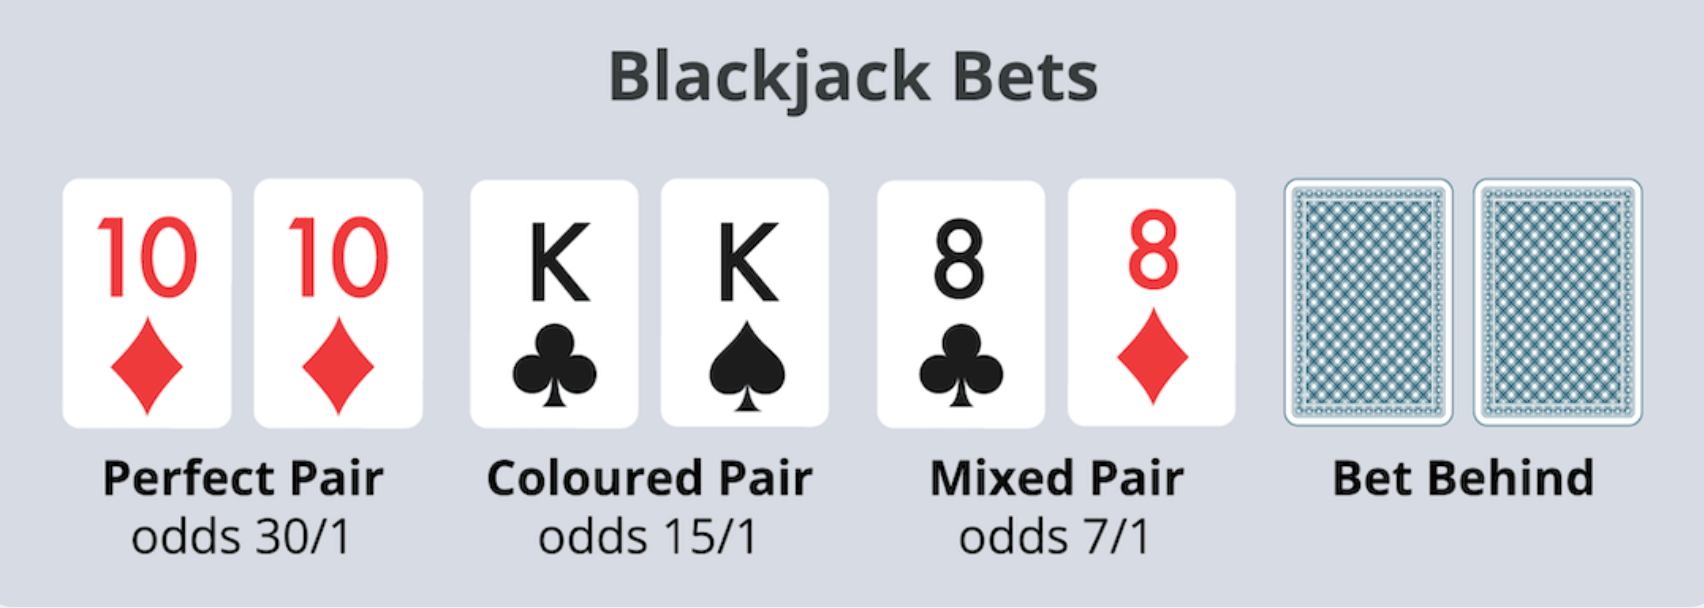 blackjack bets